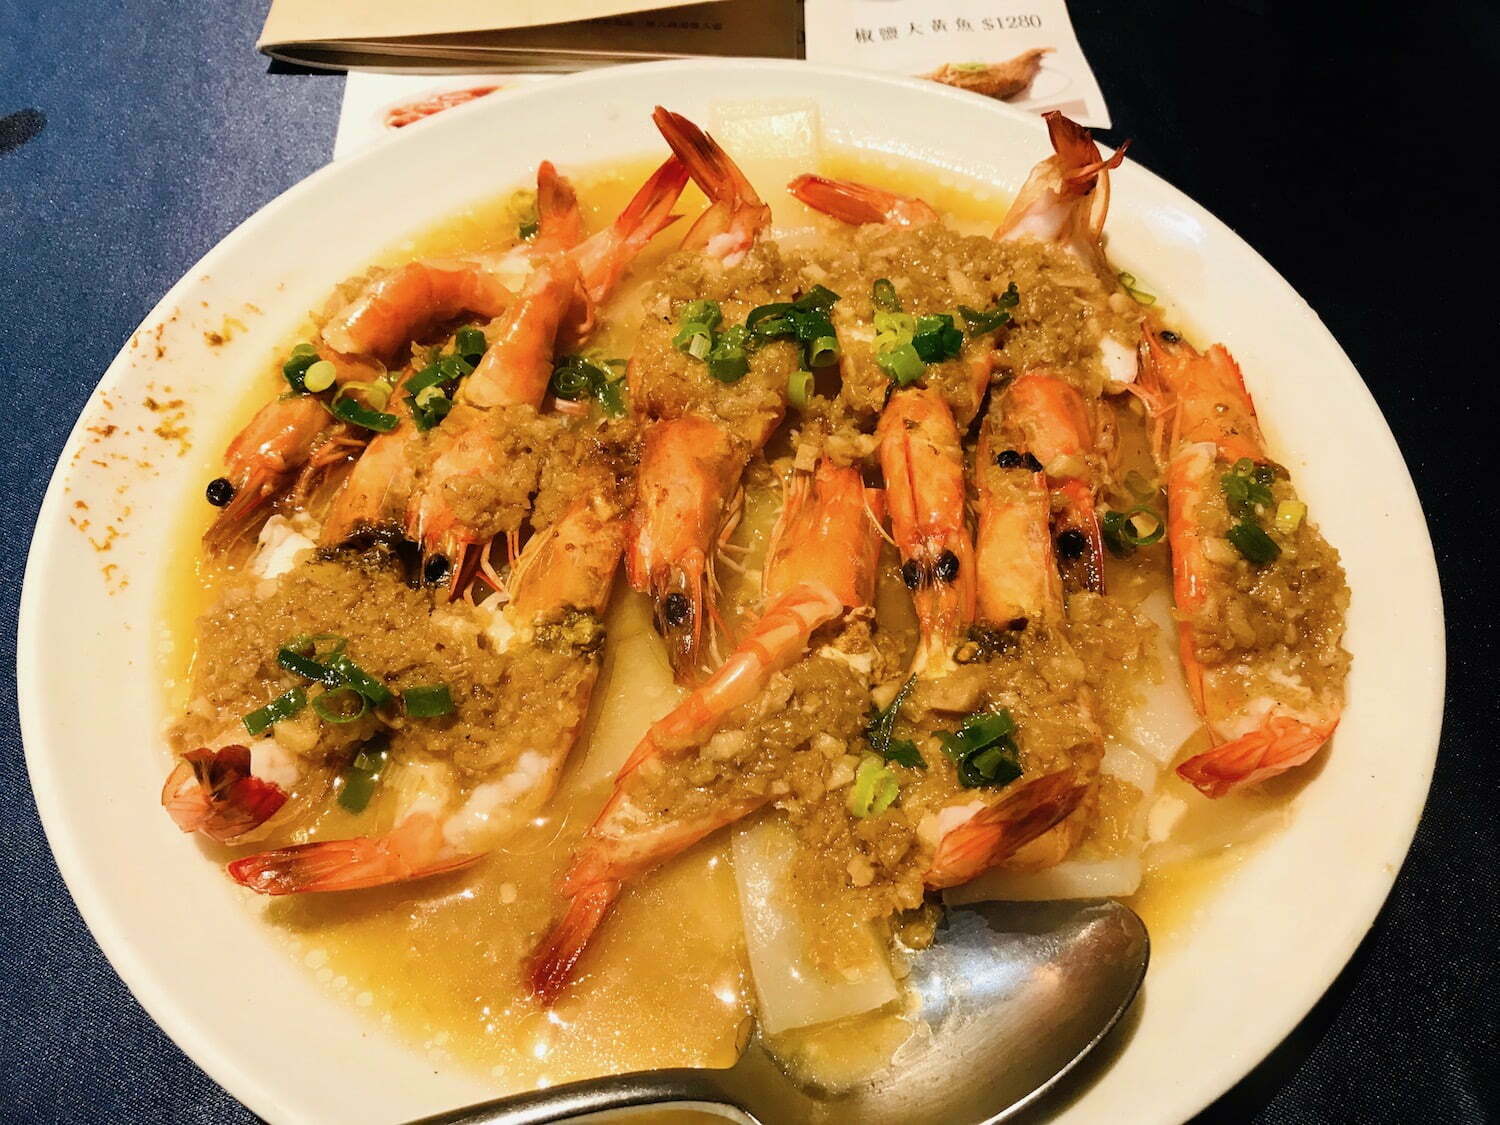 Funan fresh steamed shrimp with garlic